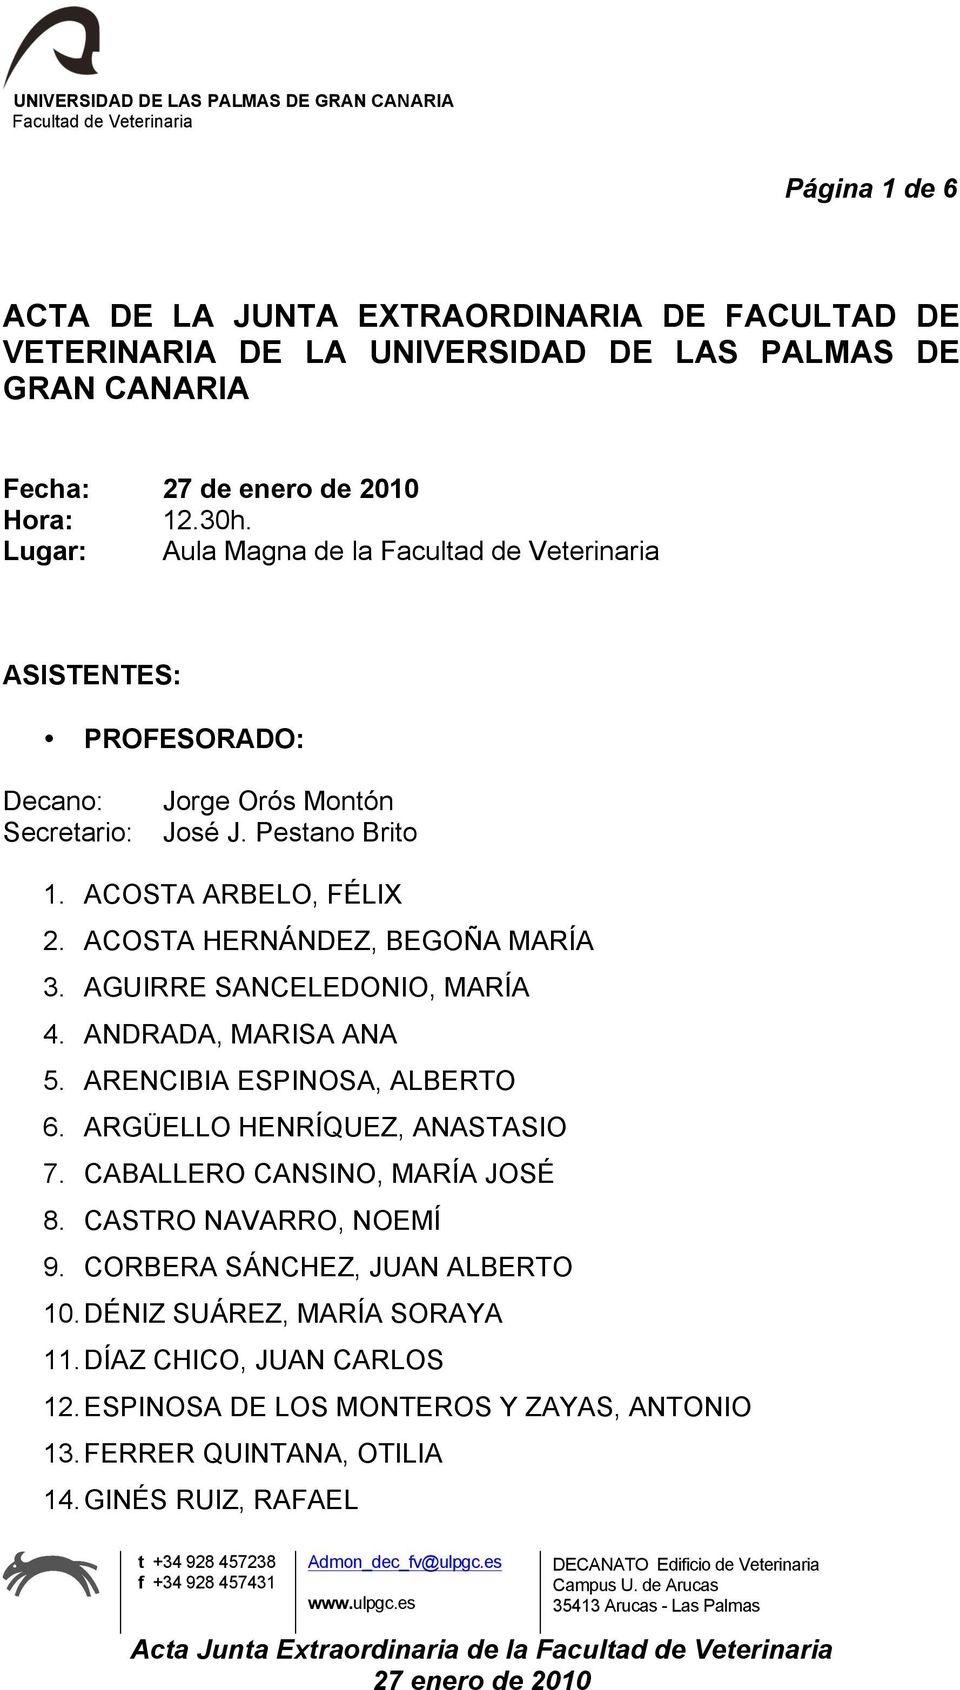 AGUIRRE SANCELEDONIO, MARÍA 4. ANDRADA, MARISA ANA 5. ARENCIBIA ESPINOSA, ALBERTO 6. ARGÜELLO HENRÍQUEZ, ANASTASIO 7. CABALLERO CANSINO, MARÍA JOSÉ 8.